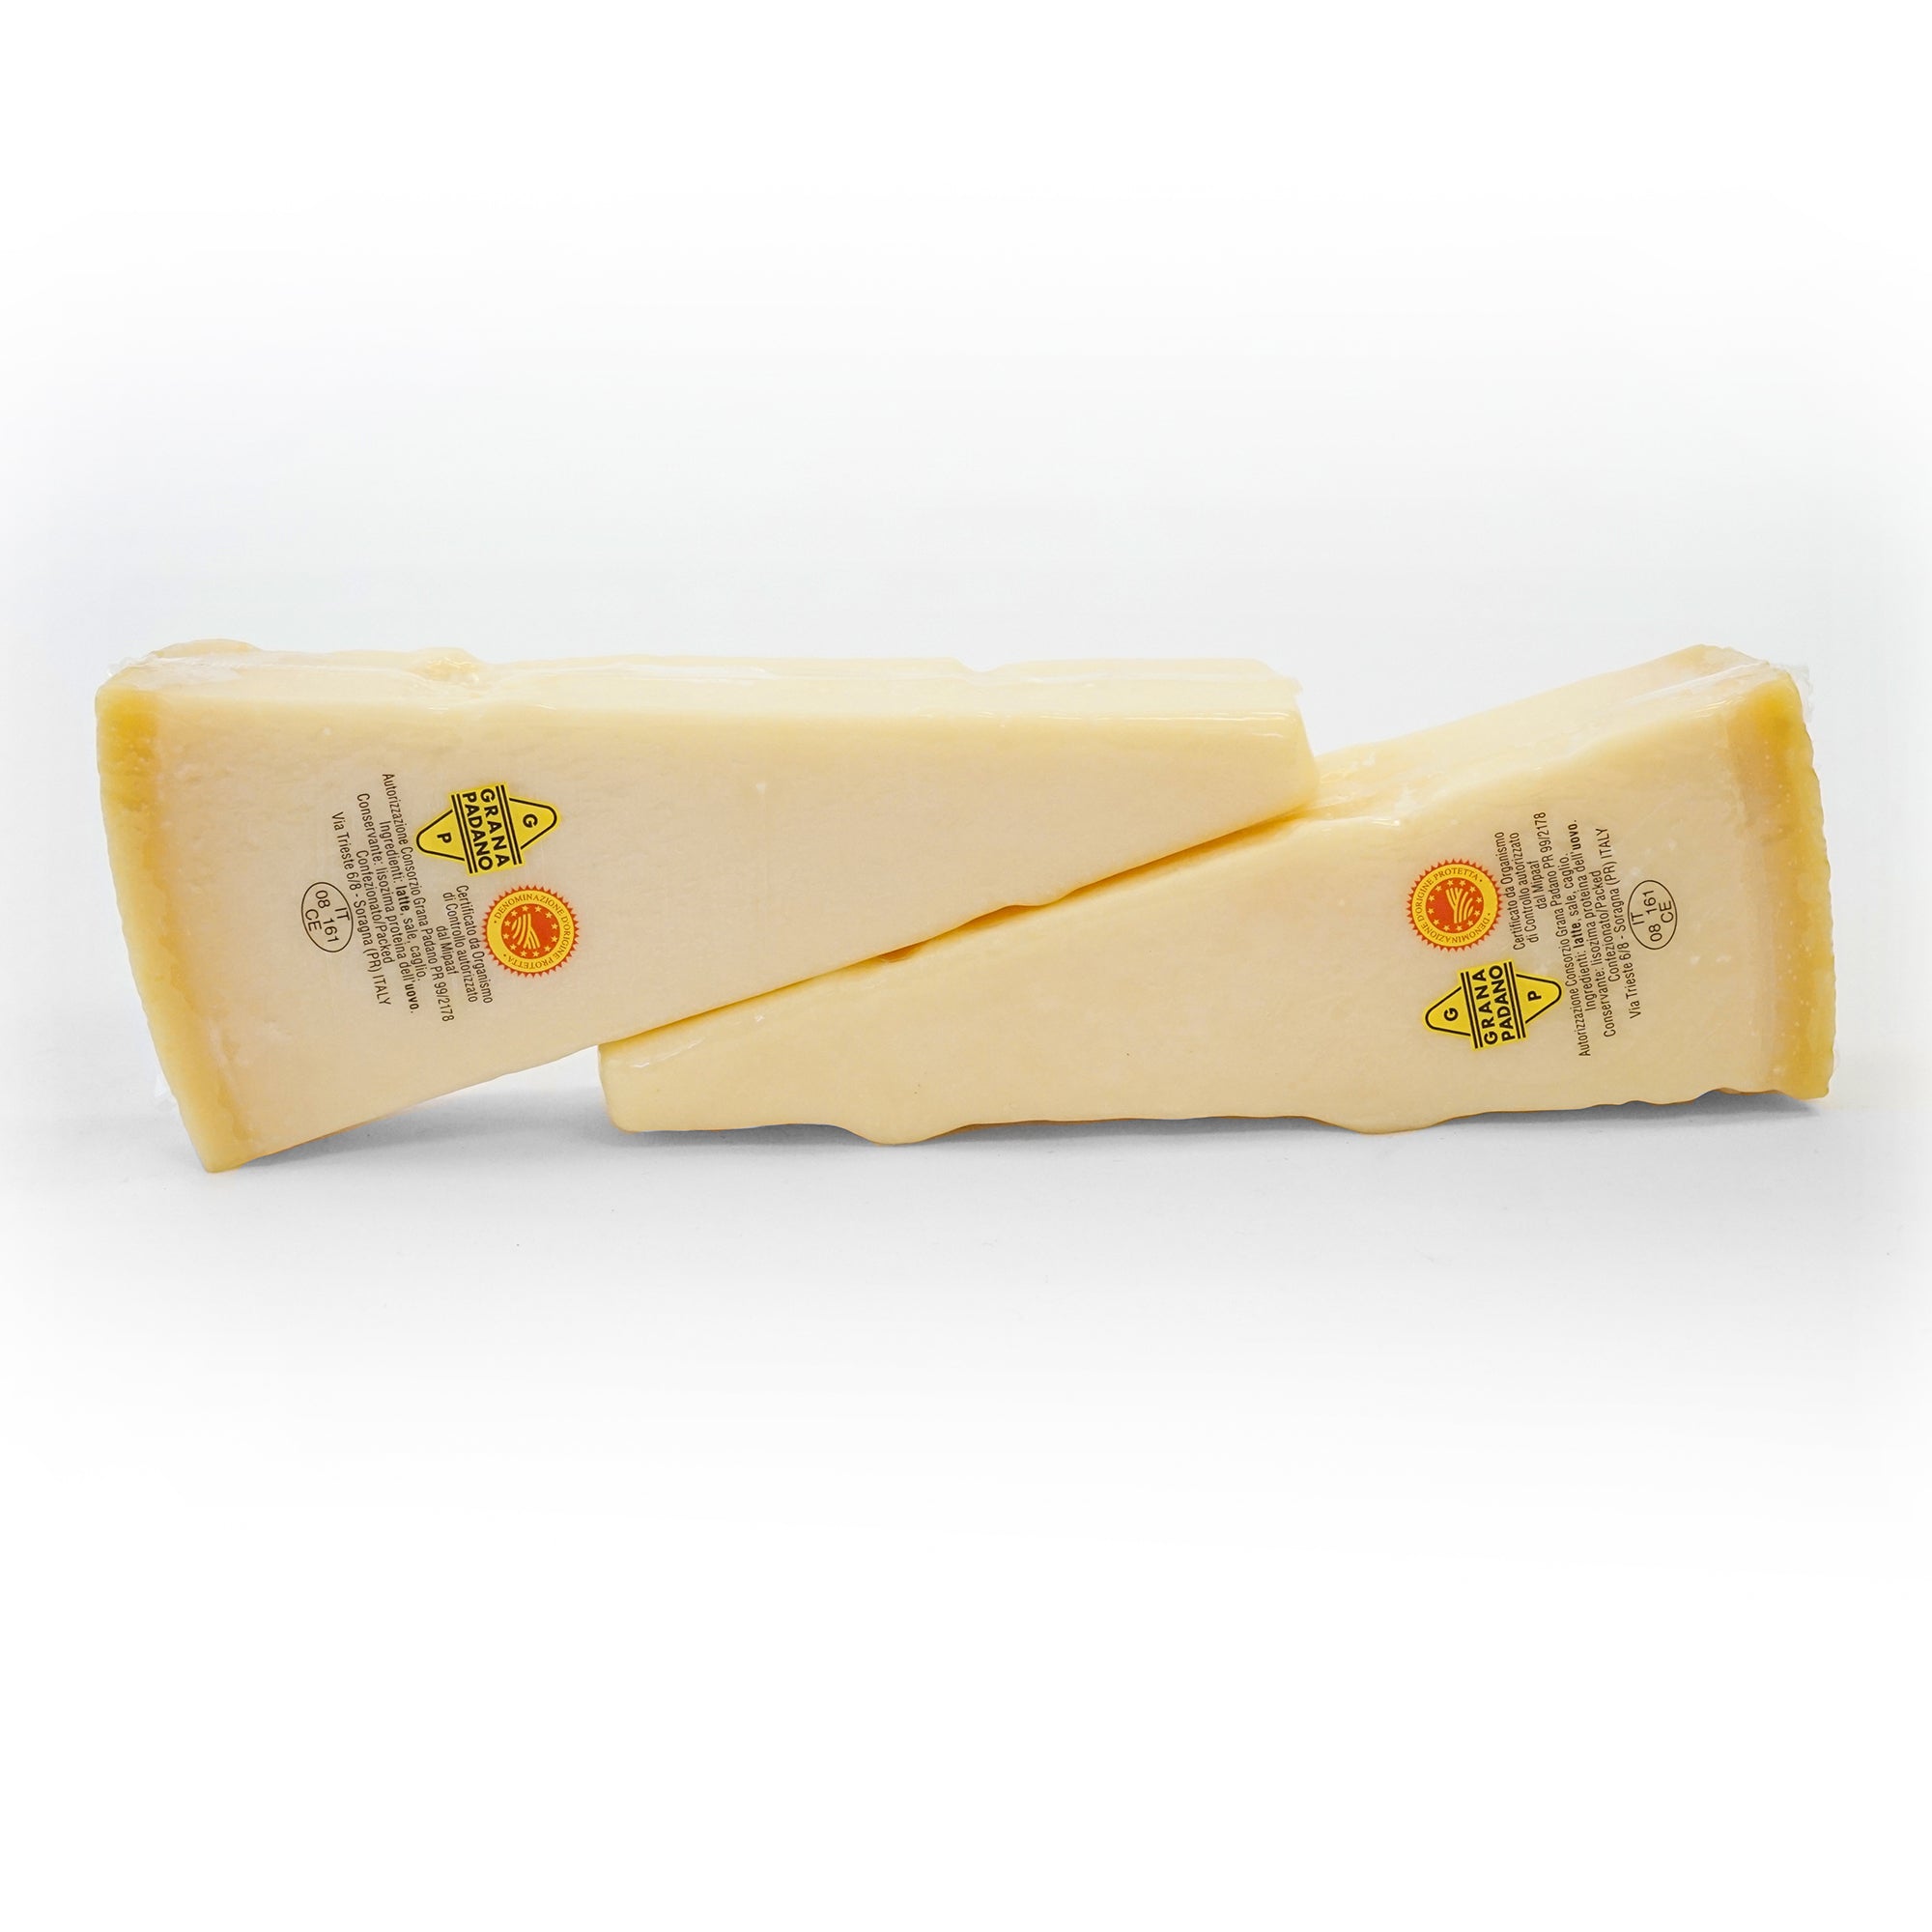 Grana Padano Cheese by Emma  (1Lb)